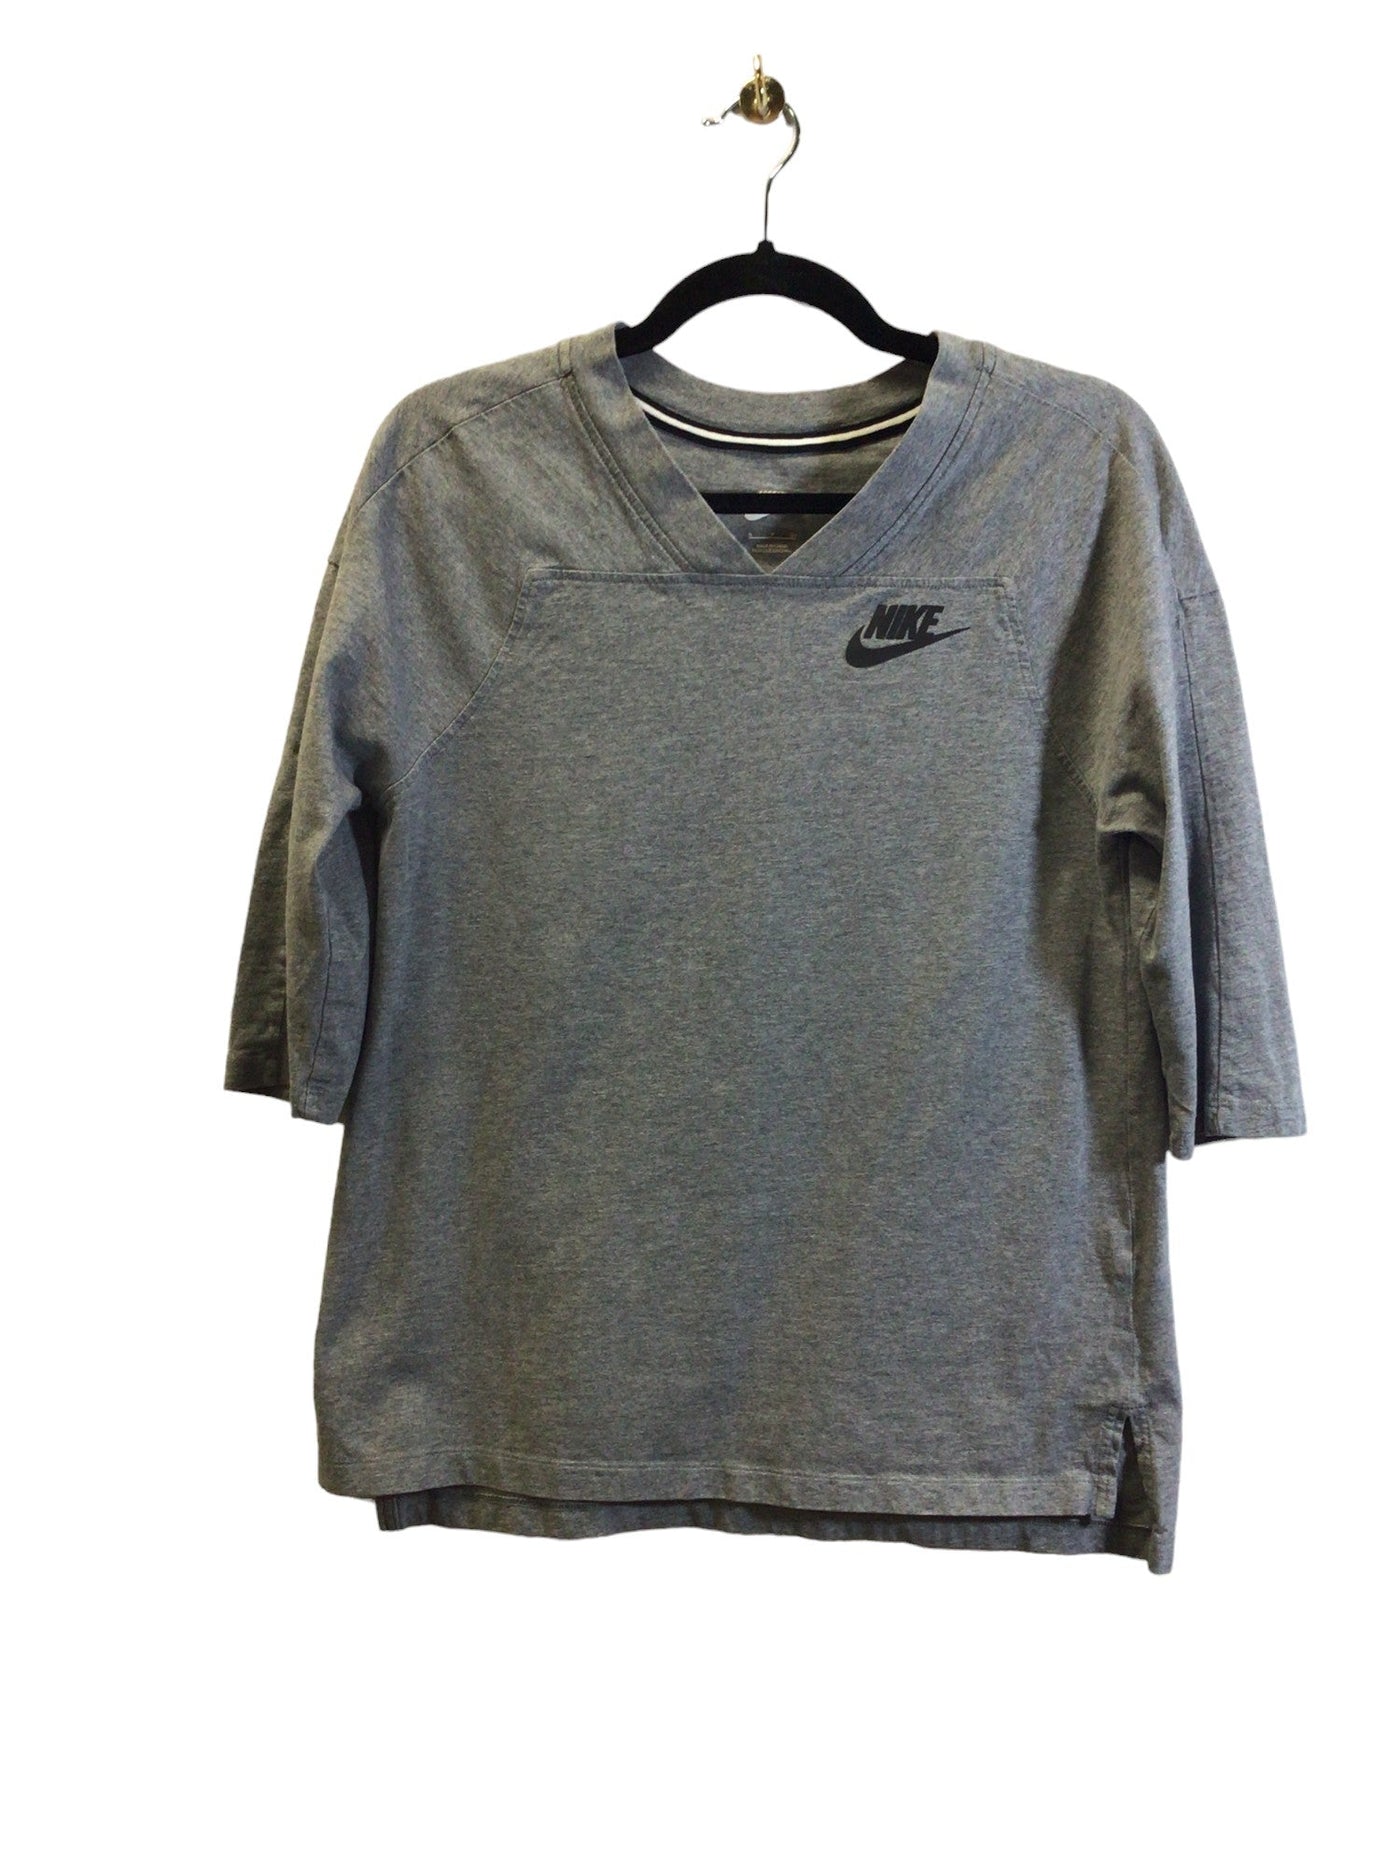 NIKE Women T-Shirts Regular fit in Gray - Size S | 16.5 $ KOOP